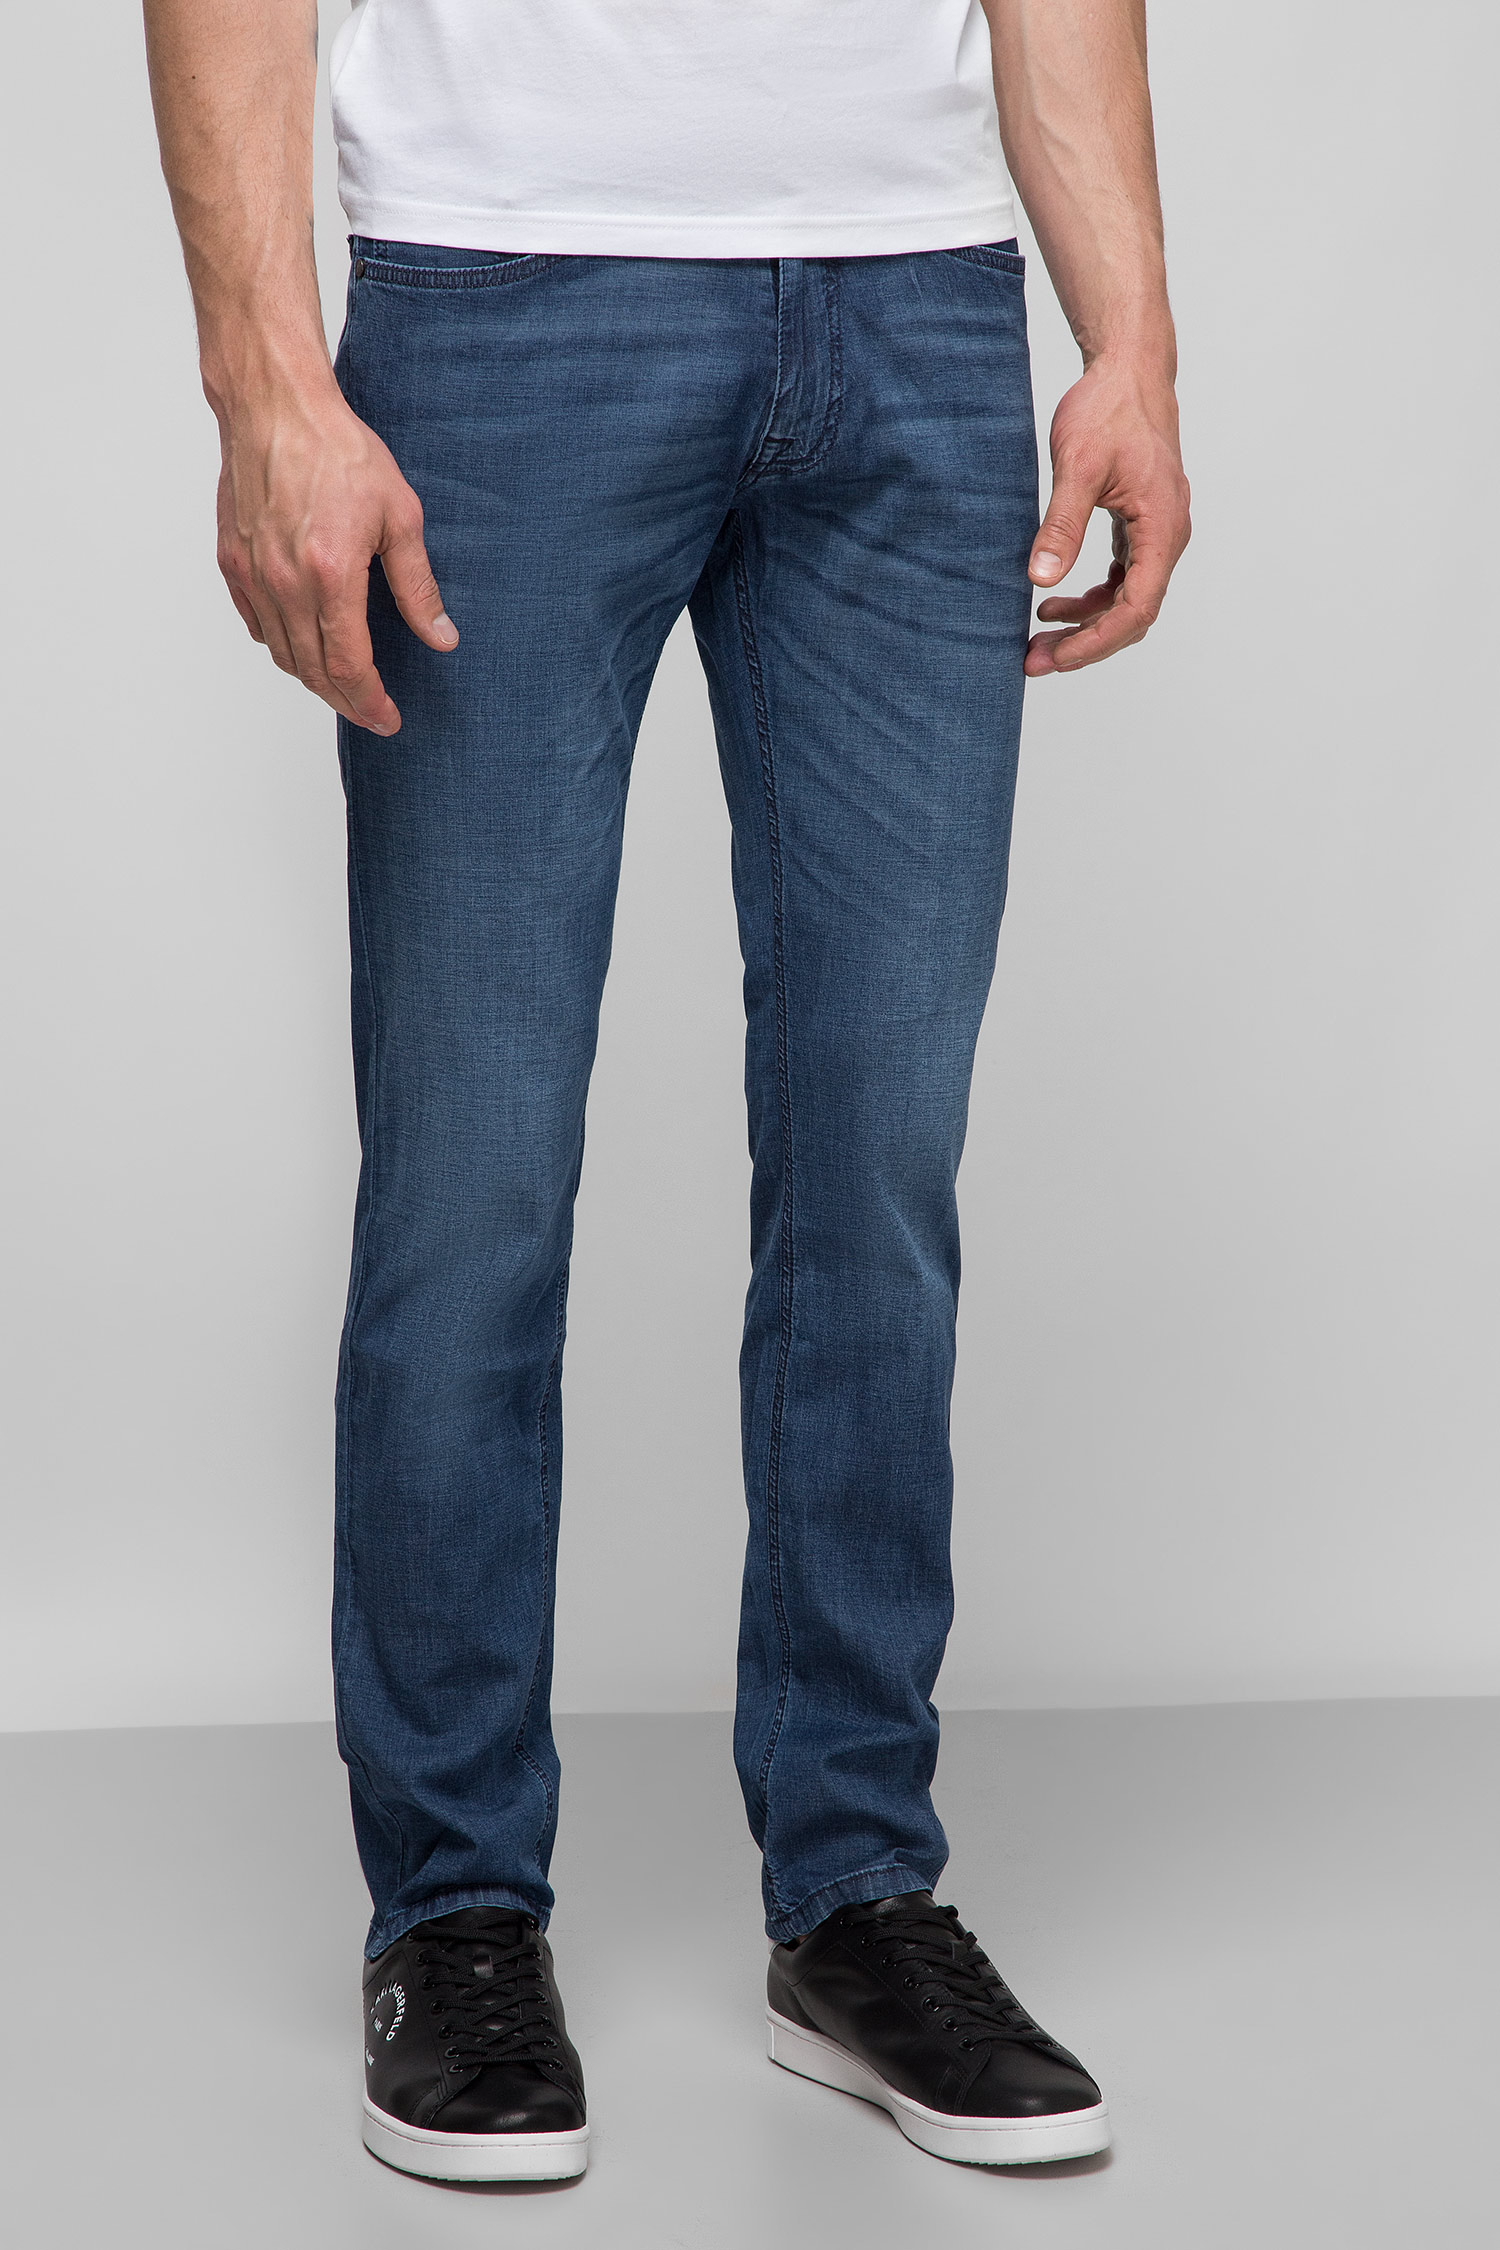 Чоловічі сині джинси Karl Lagerfeld 501806.265840;690